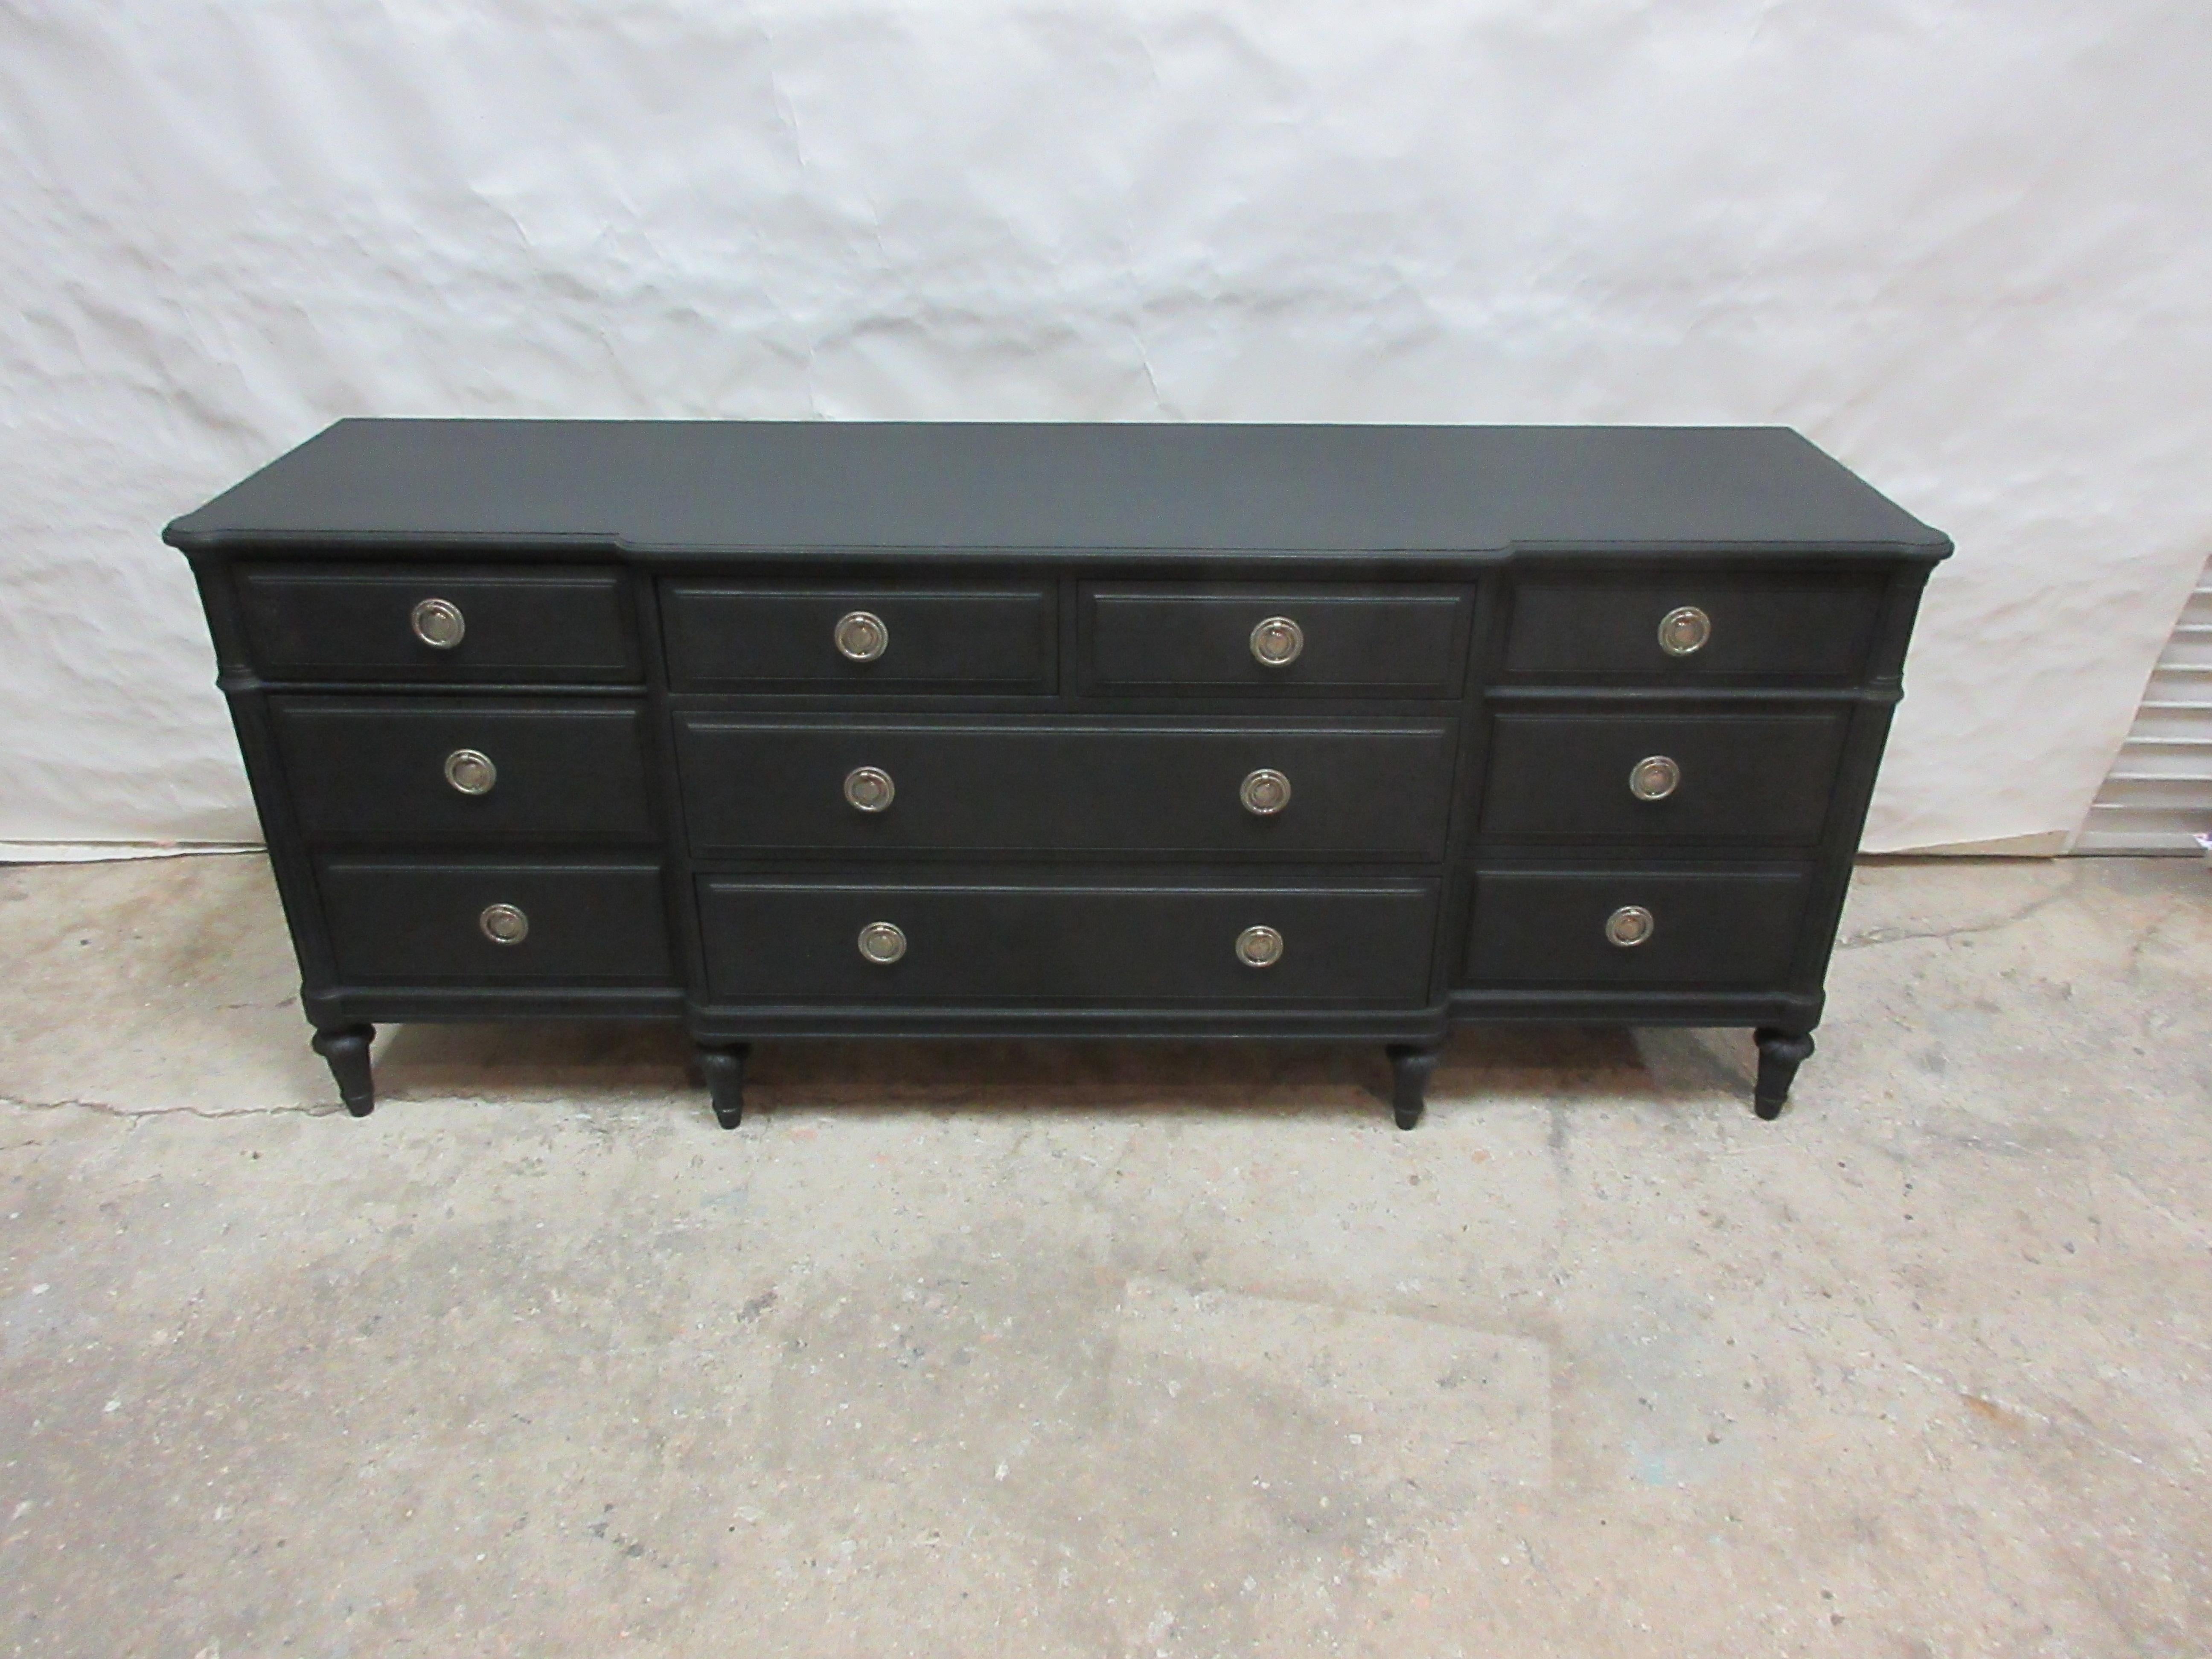 Dies ist ein Gustavian Style 10 Schublade Dresser, wurde restauriert und neu lackiert mit Milk Paints Midnight Black